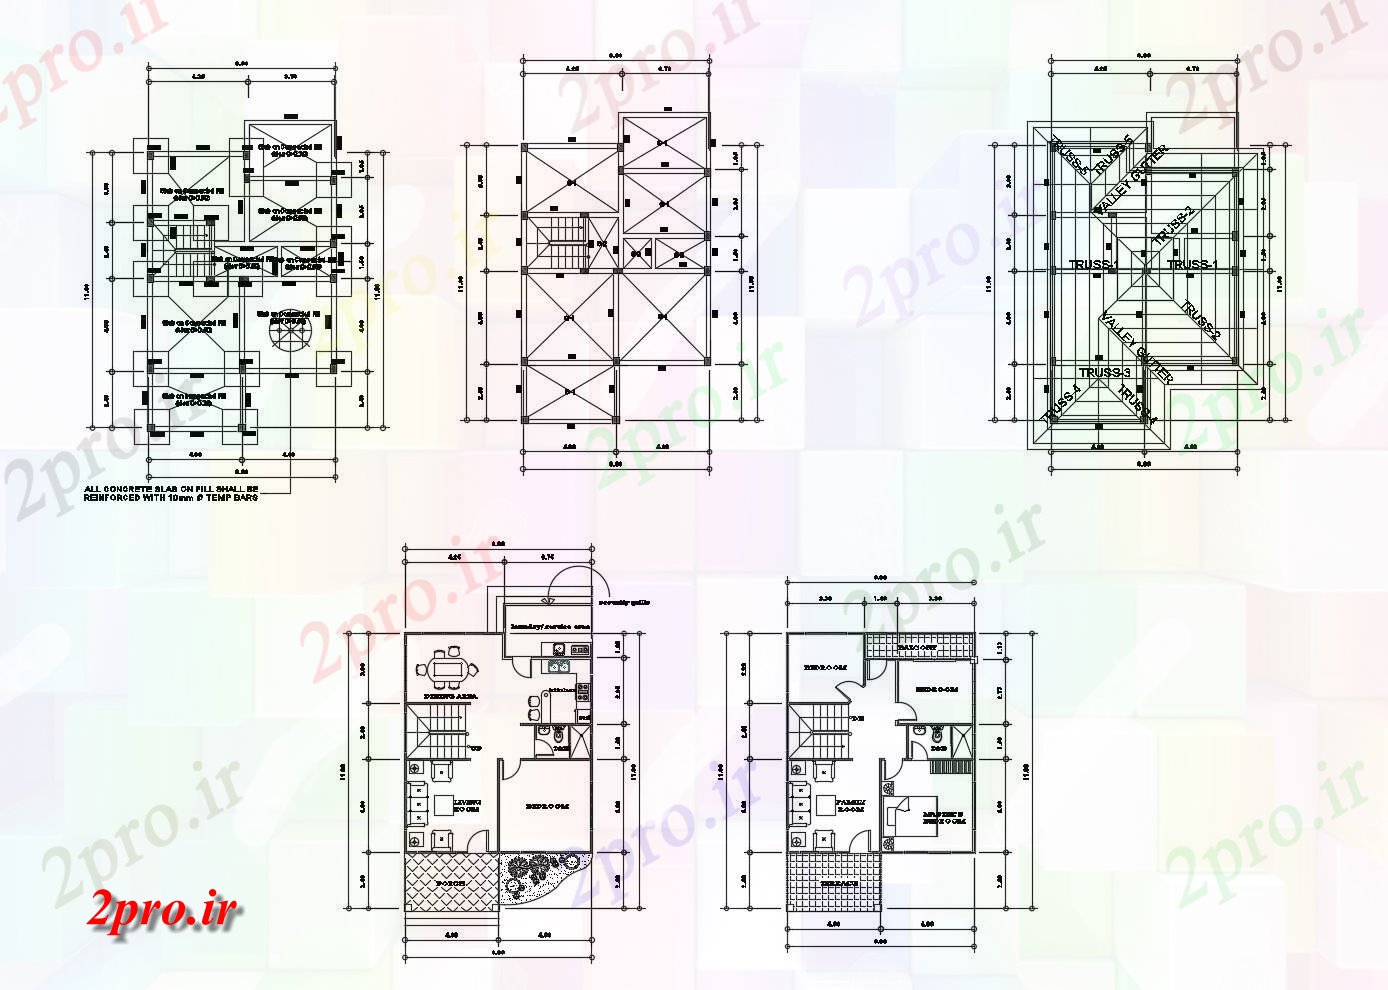 دانلود نقشه مسکونی ، ویلایی ، آپارتمان طرحی طبقه مسکونی x1180mtr خانه 800mtr با طرحی سقف 8 در 12 متر (کد86563)